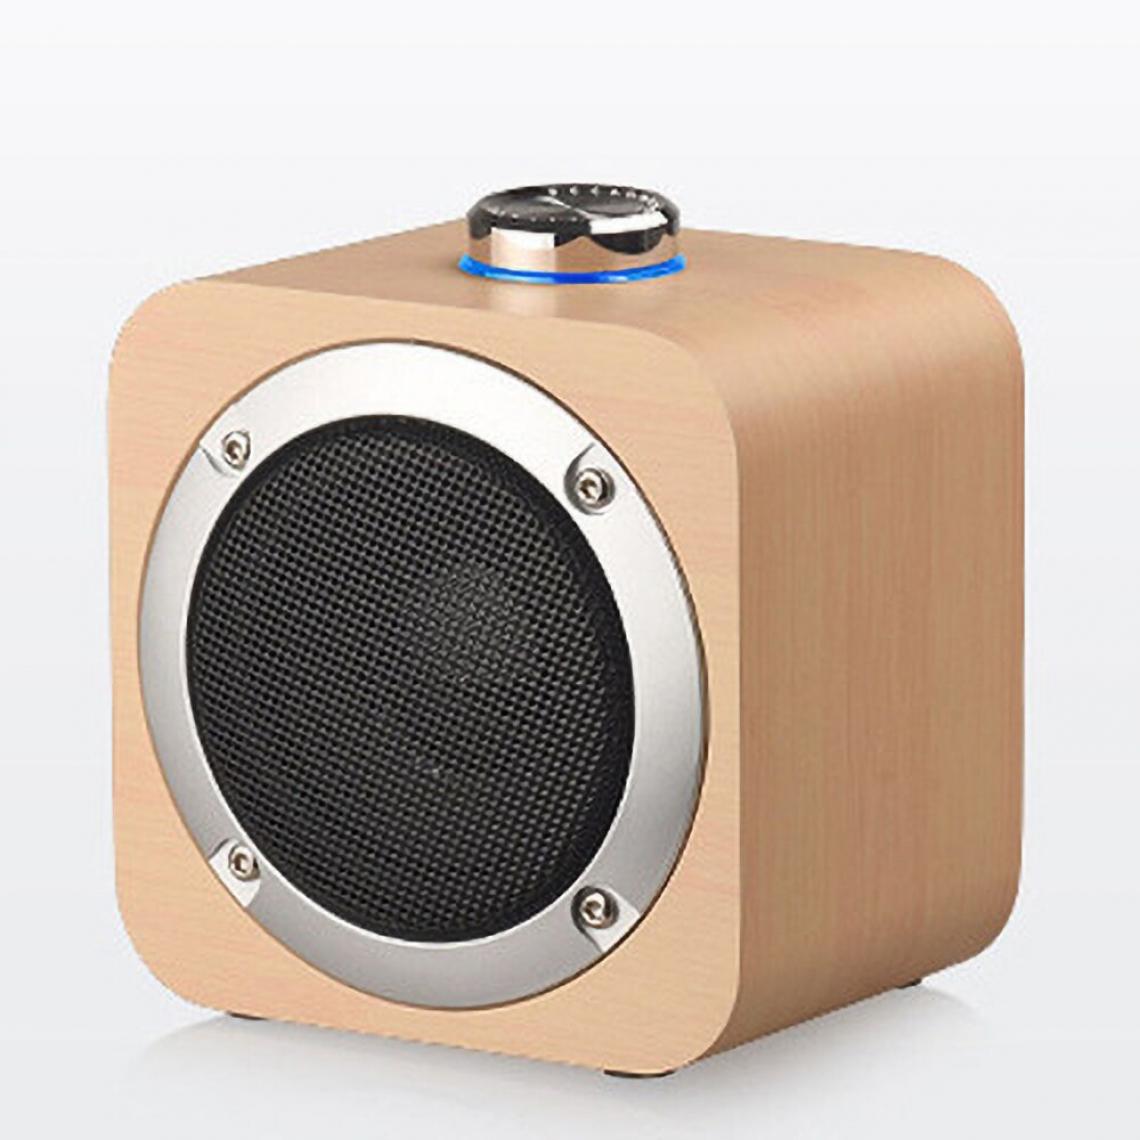 Universal - Haut-parleur portable en bois Bluetooth haut-parleur sans fil subwoofer lecteur de musique subwoofer extérieur rétro | haut-parleurs portables (style bambou) - Hauts-parleurs